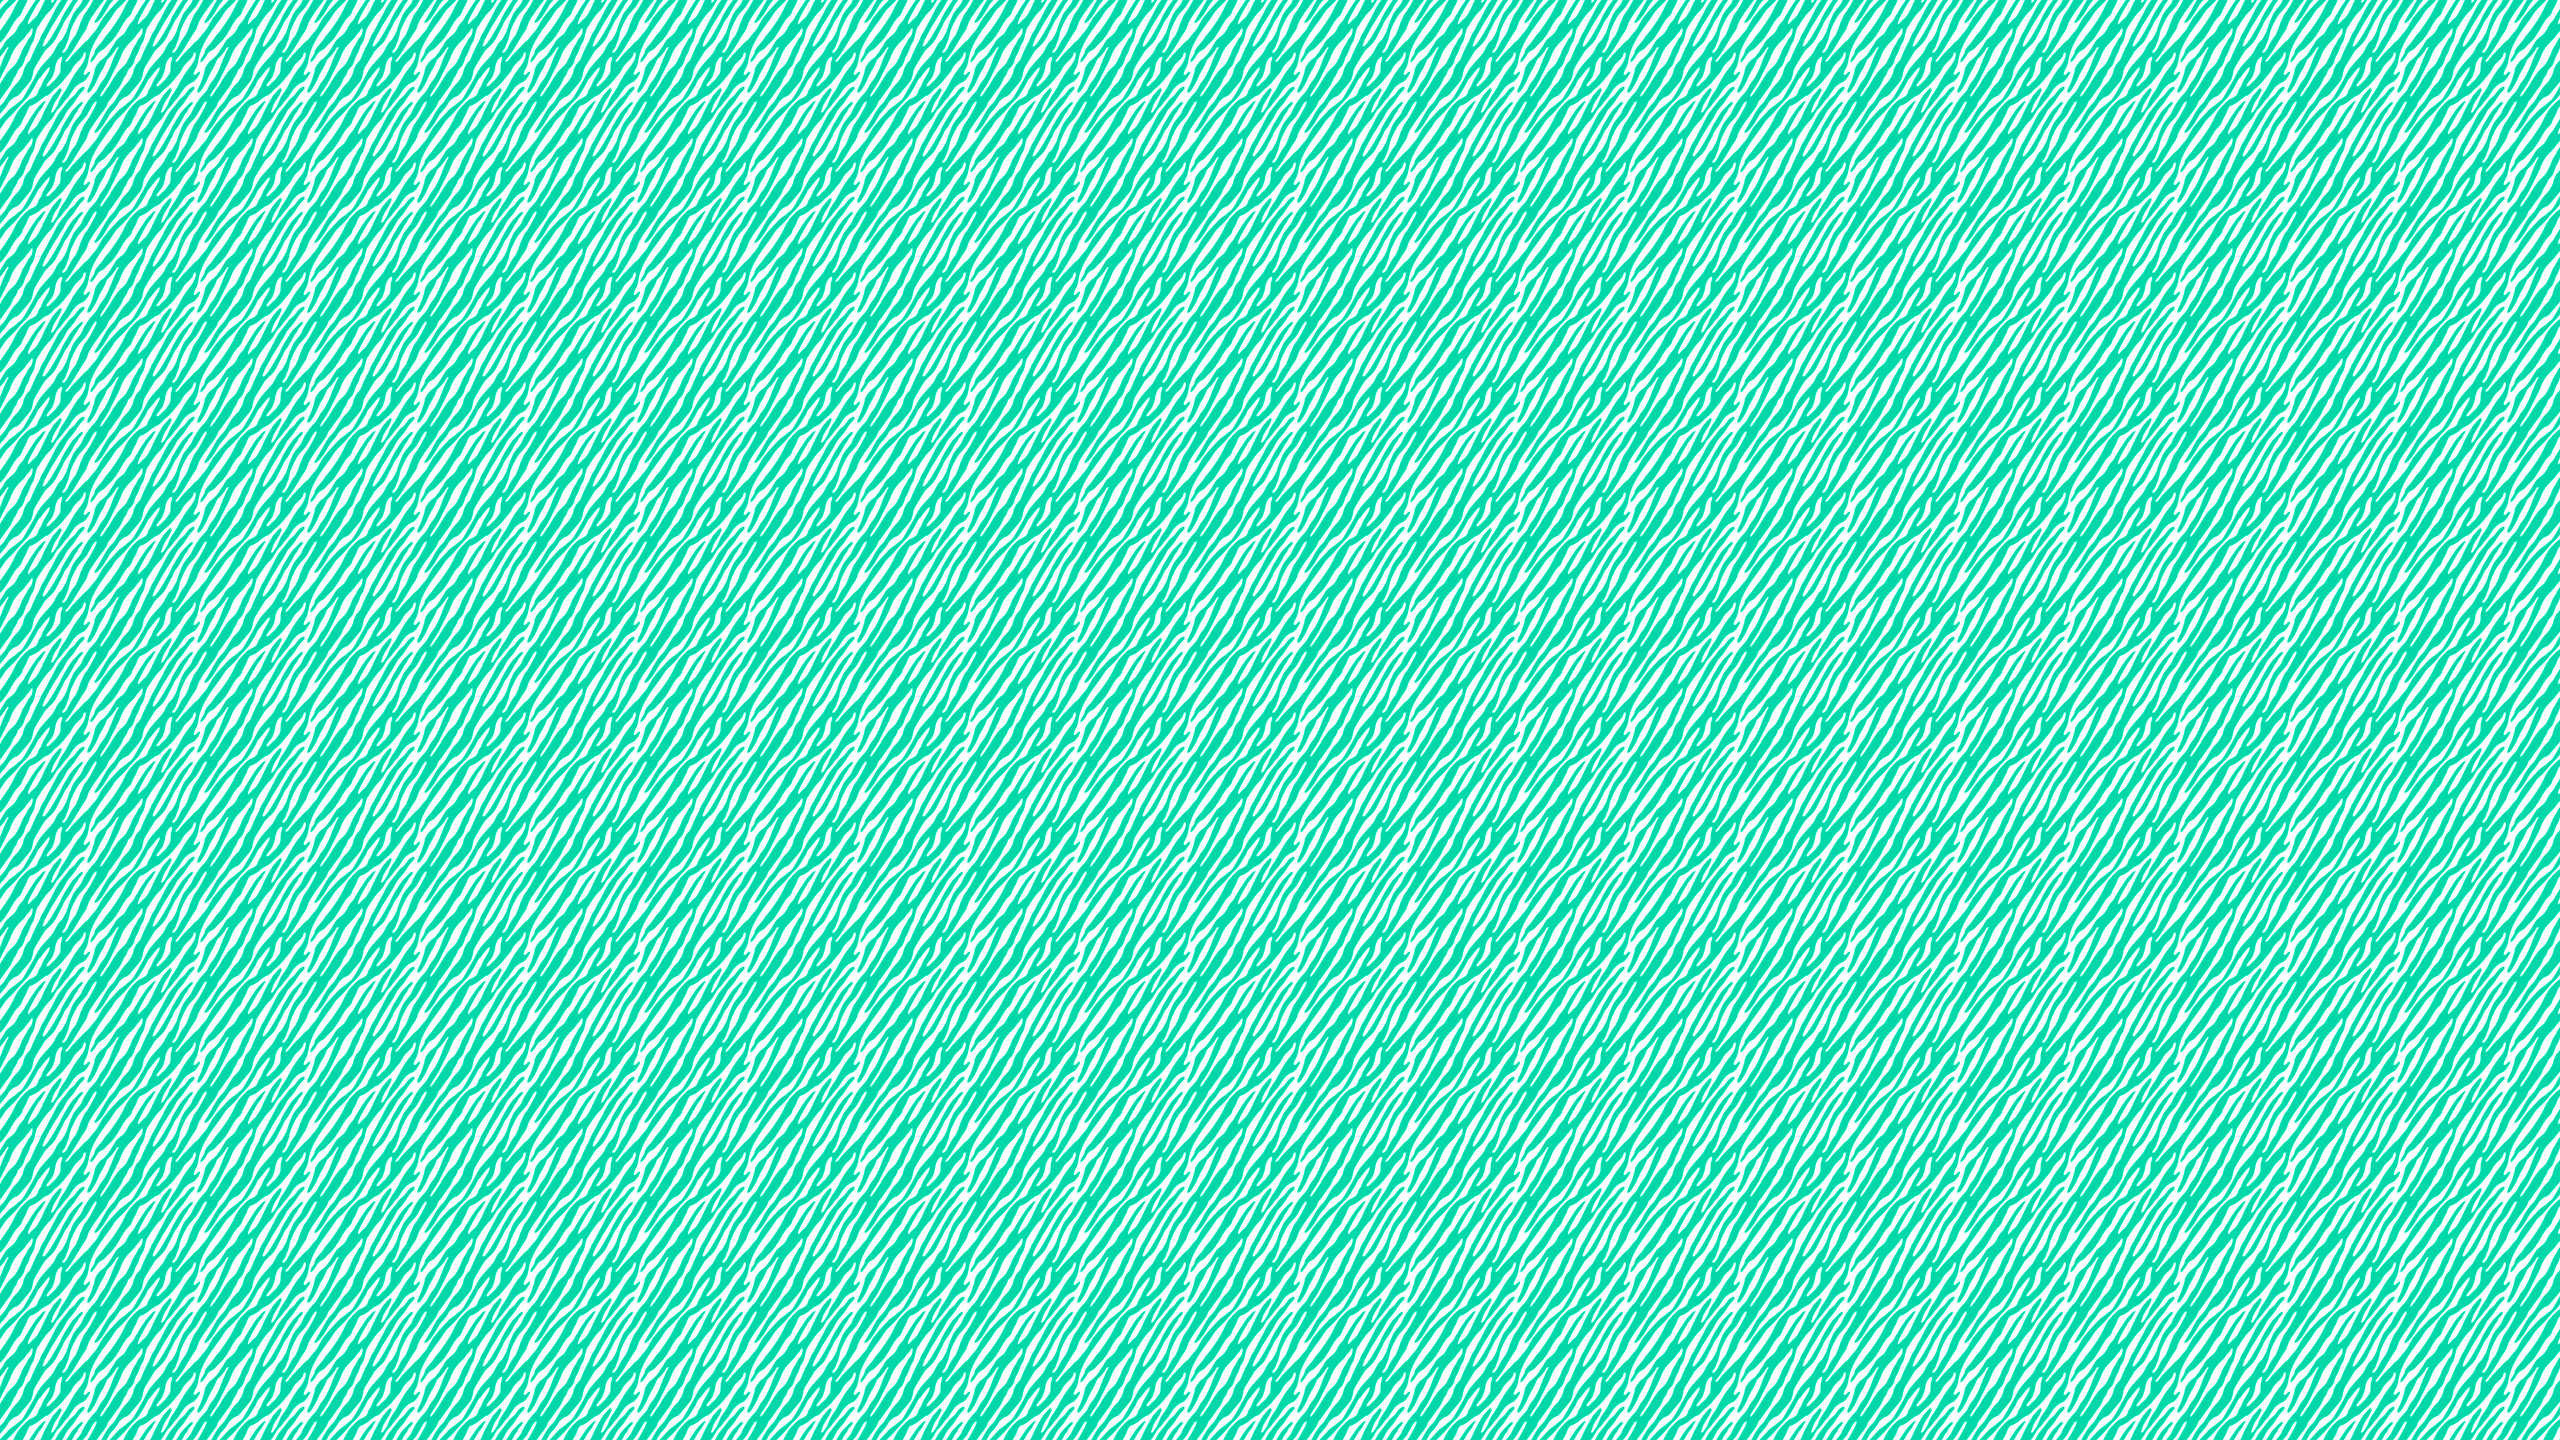 2560x1440 Cute Teal Wallpapers - WallpaperSafari ...